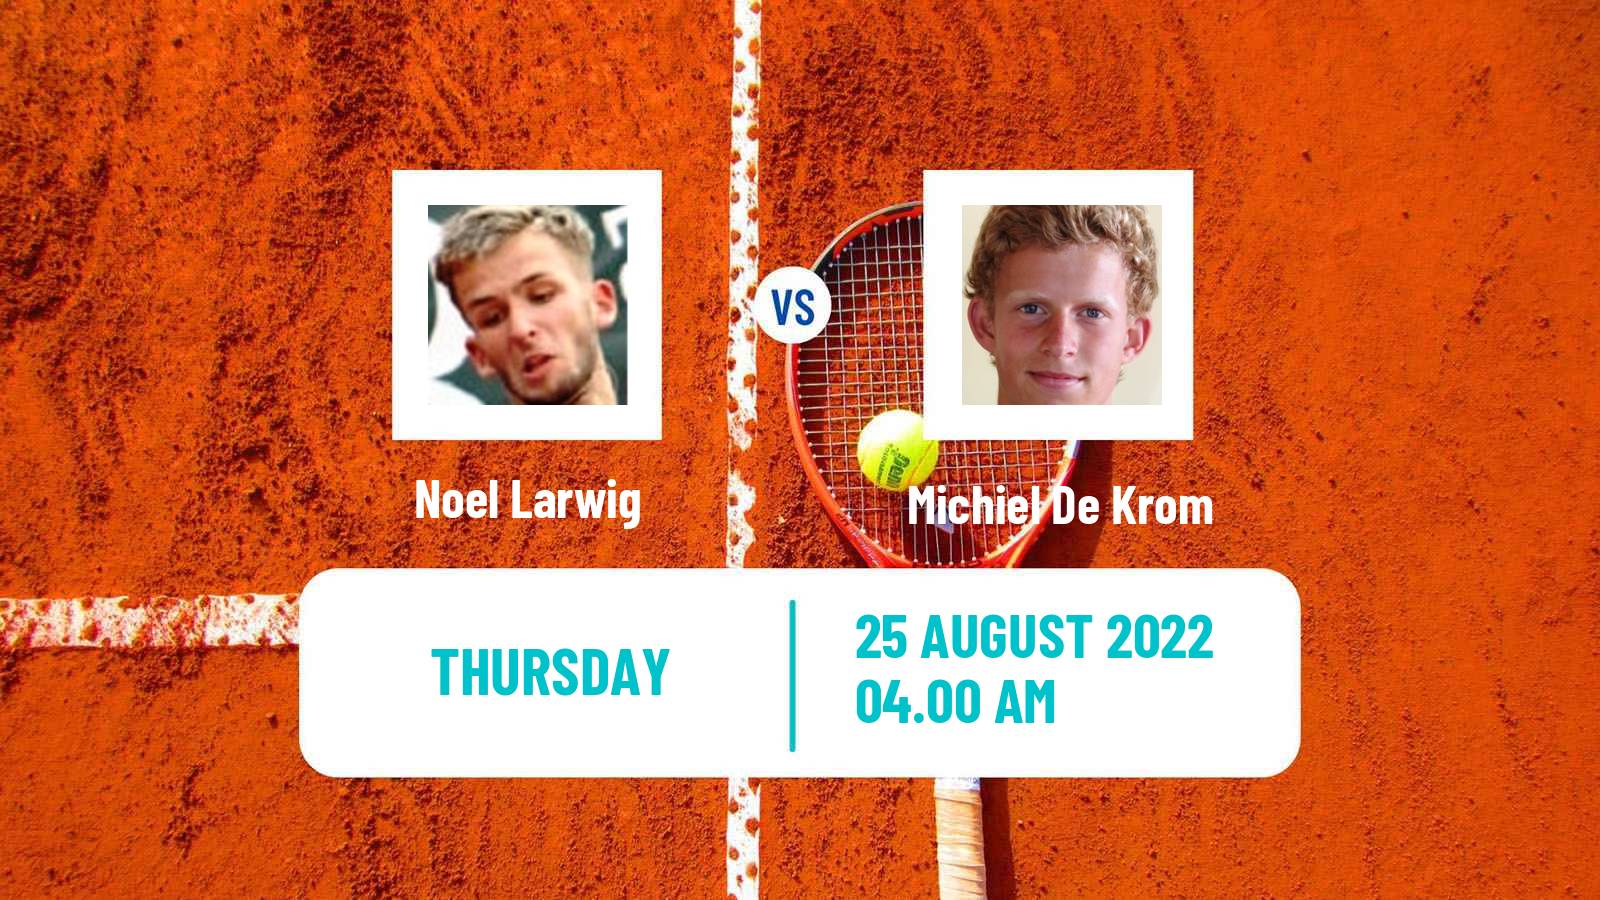 Tennis ITF Tournaments Noel Larwig - Michiel De Krom